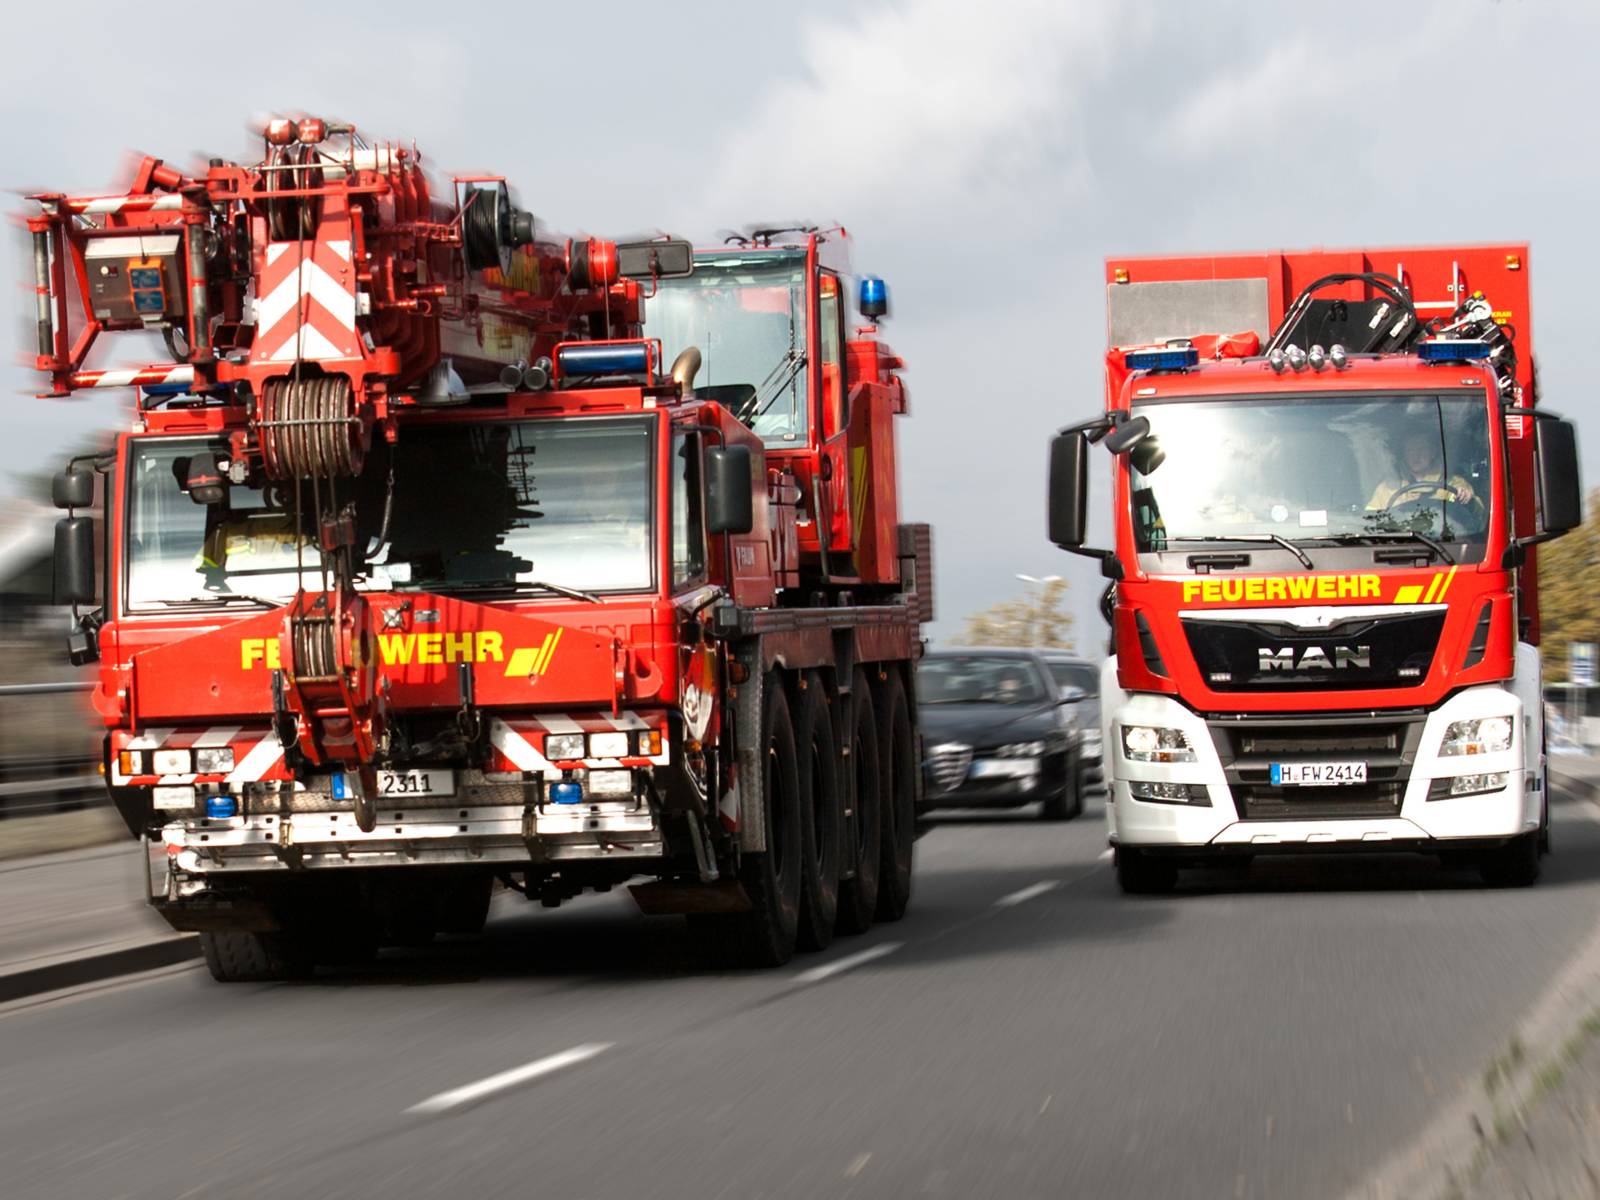 Symbolfoto: Technische Hilfeleistung mit Feuerwehrkran und Wechselladerfahrzeug mit Abrollbehälter Kranzubehör